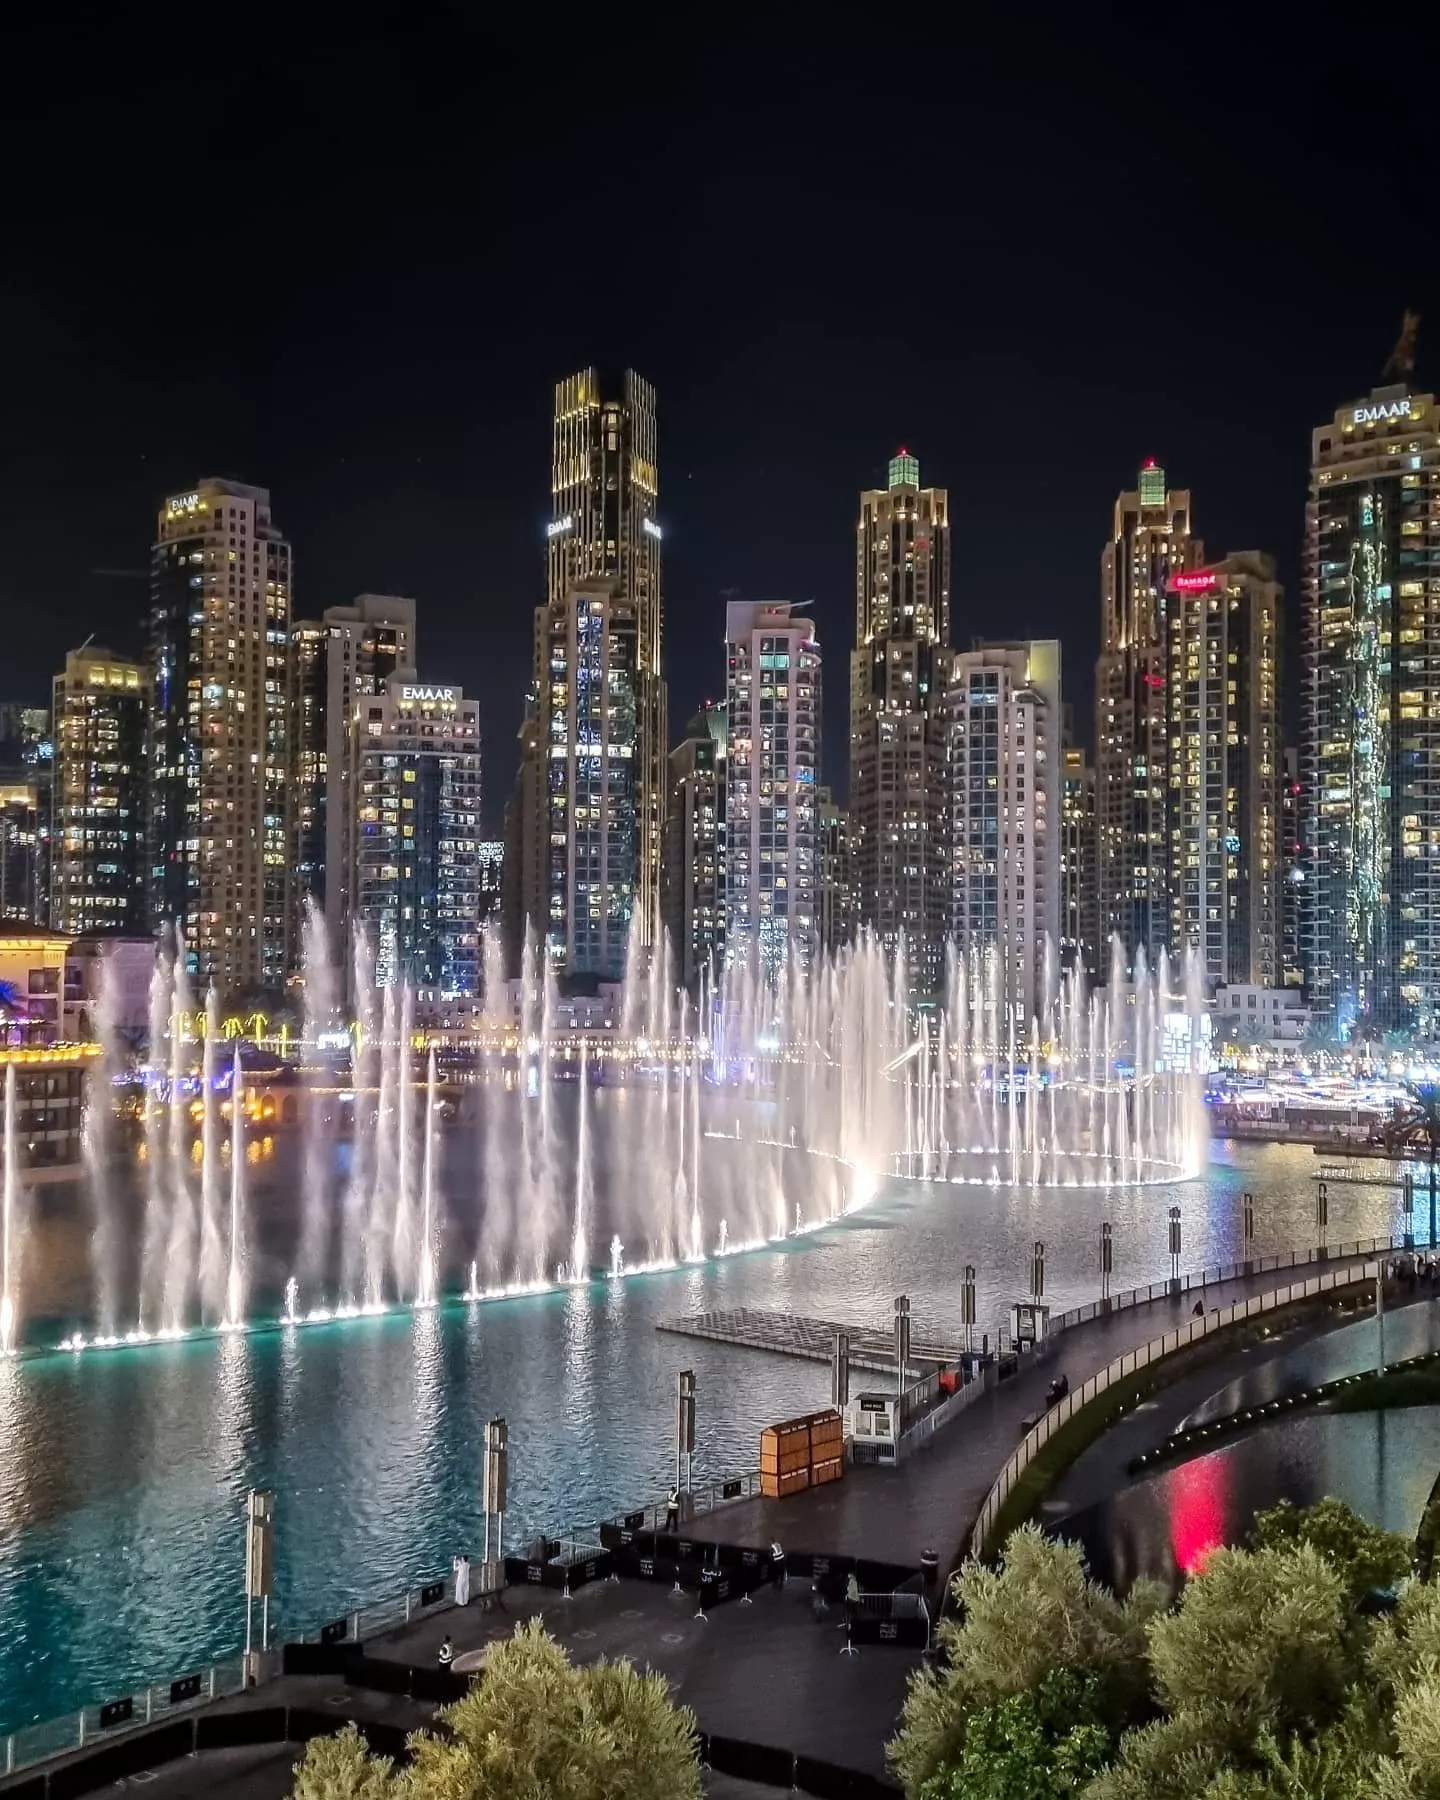 10 أماكن مجانية في دبي ستجعل رحلتكِ Almost Free!